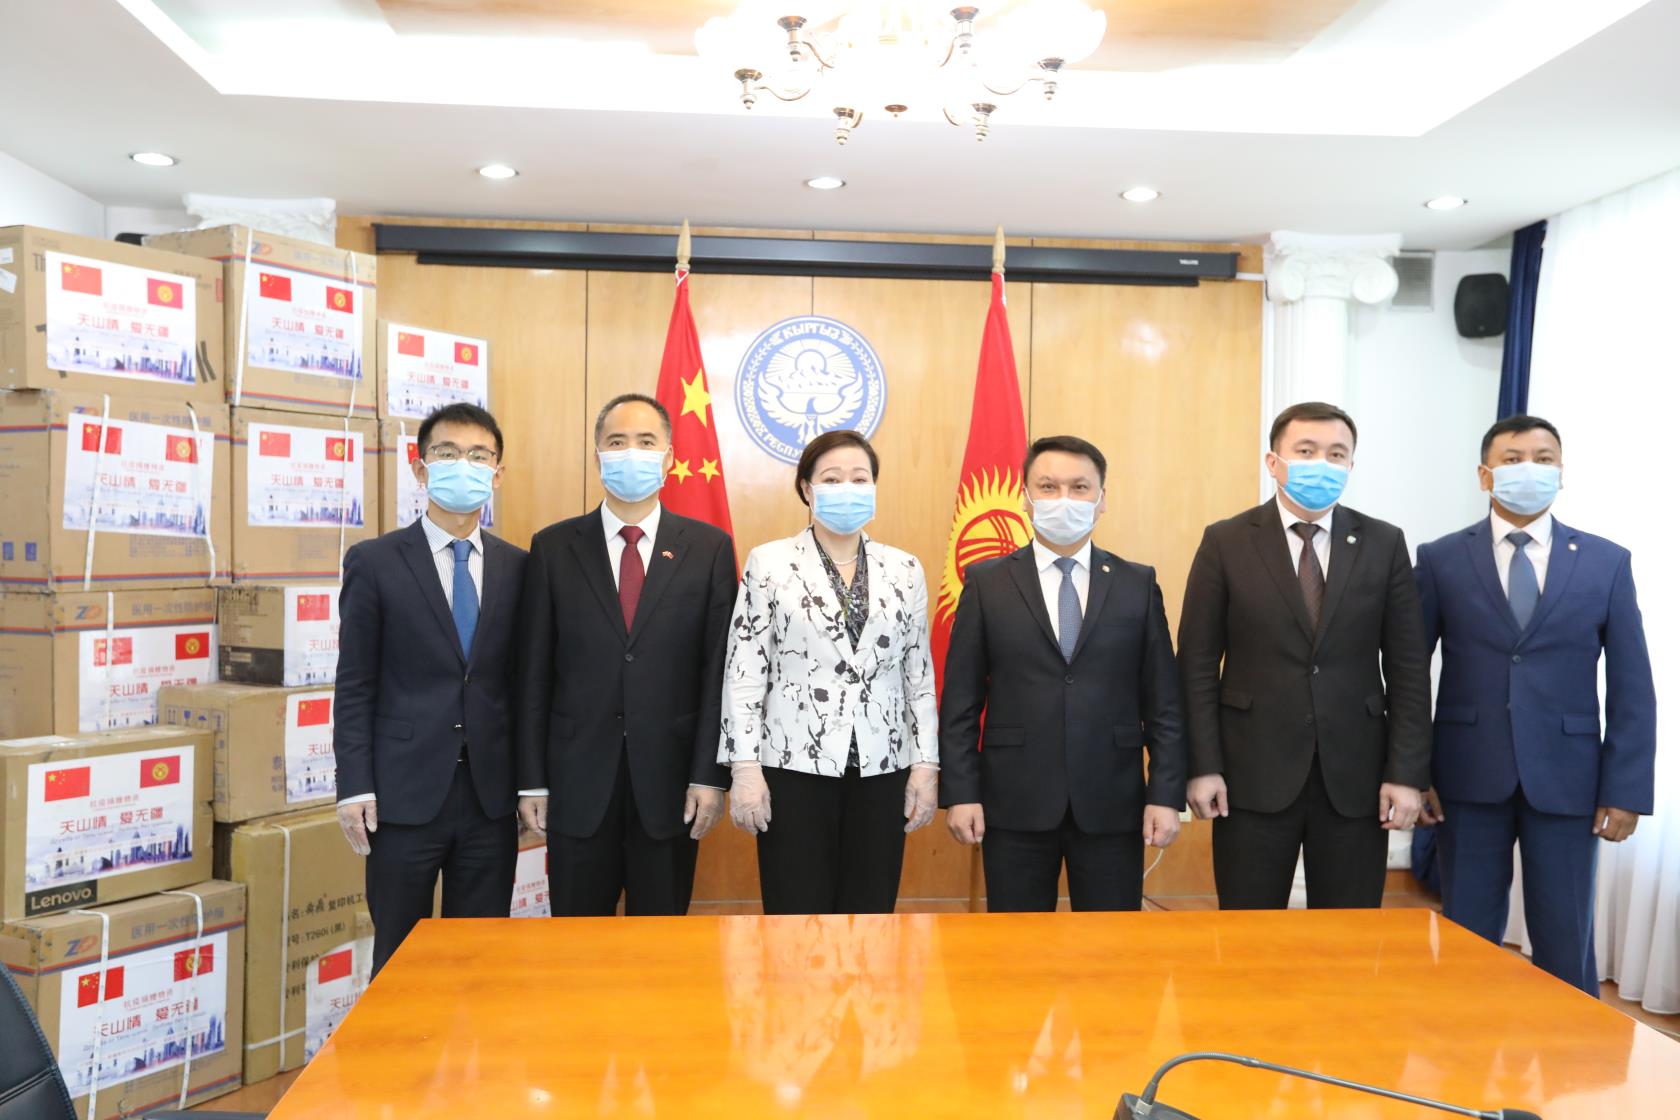 Посол КНР в КР госпожа Ду Дэвэнь приняла участие в церемонии передачи гуманитарной помощи от китайской стороны